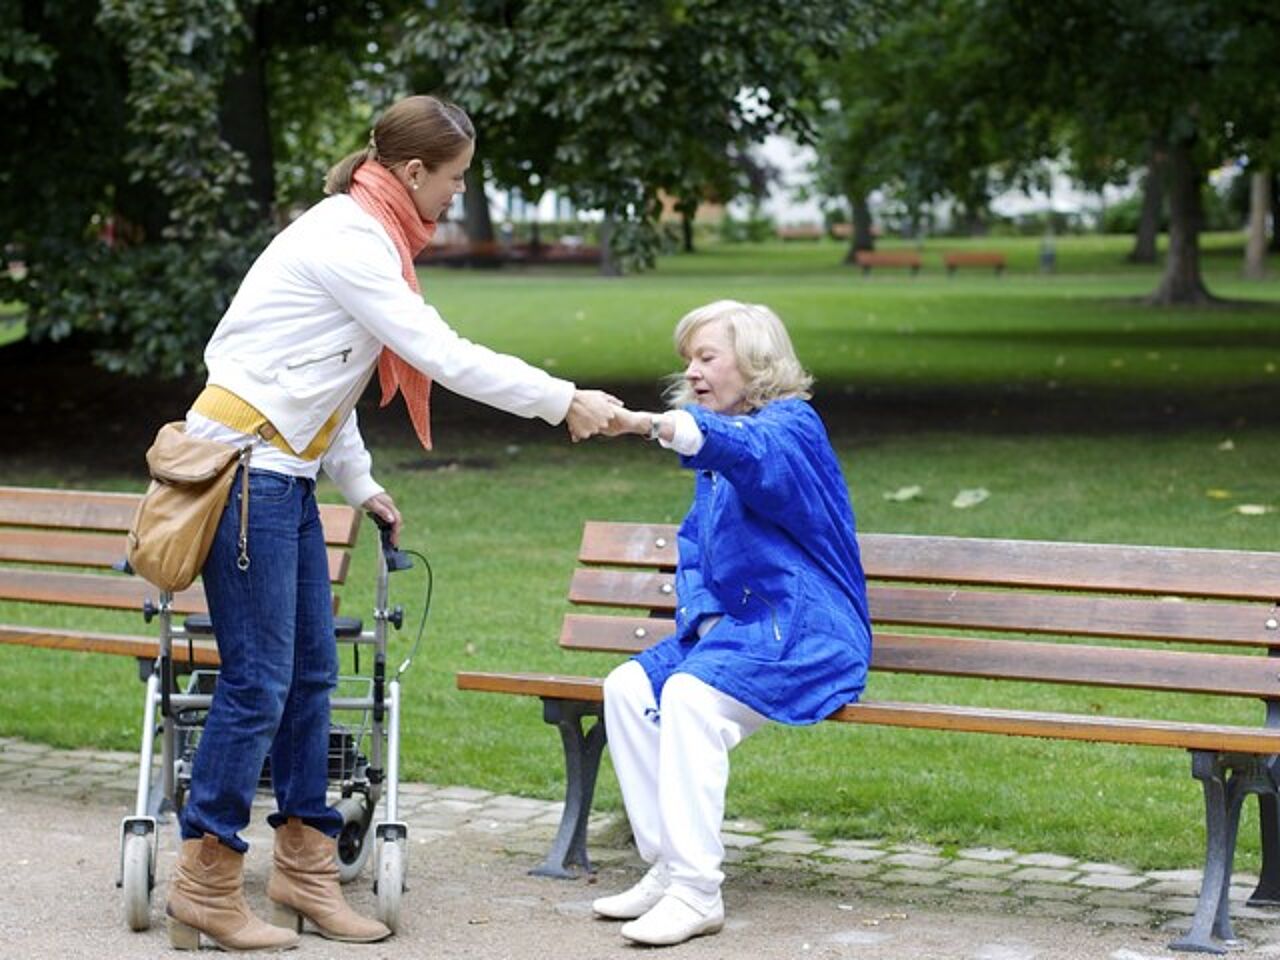 Schmuckbild zum Thema Pflege von Angehörigen. Eine jüngere Frau hilft einer älteren Frau beim Aufstehen von einer Bank in einem Park.